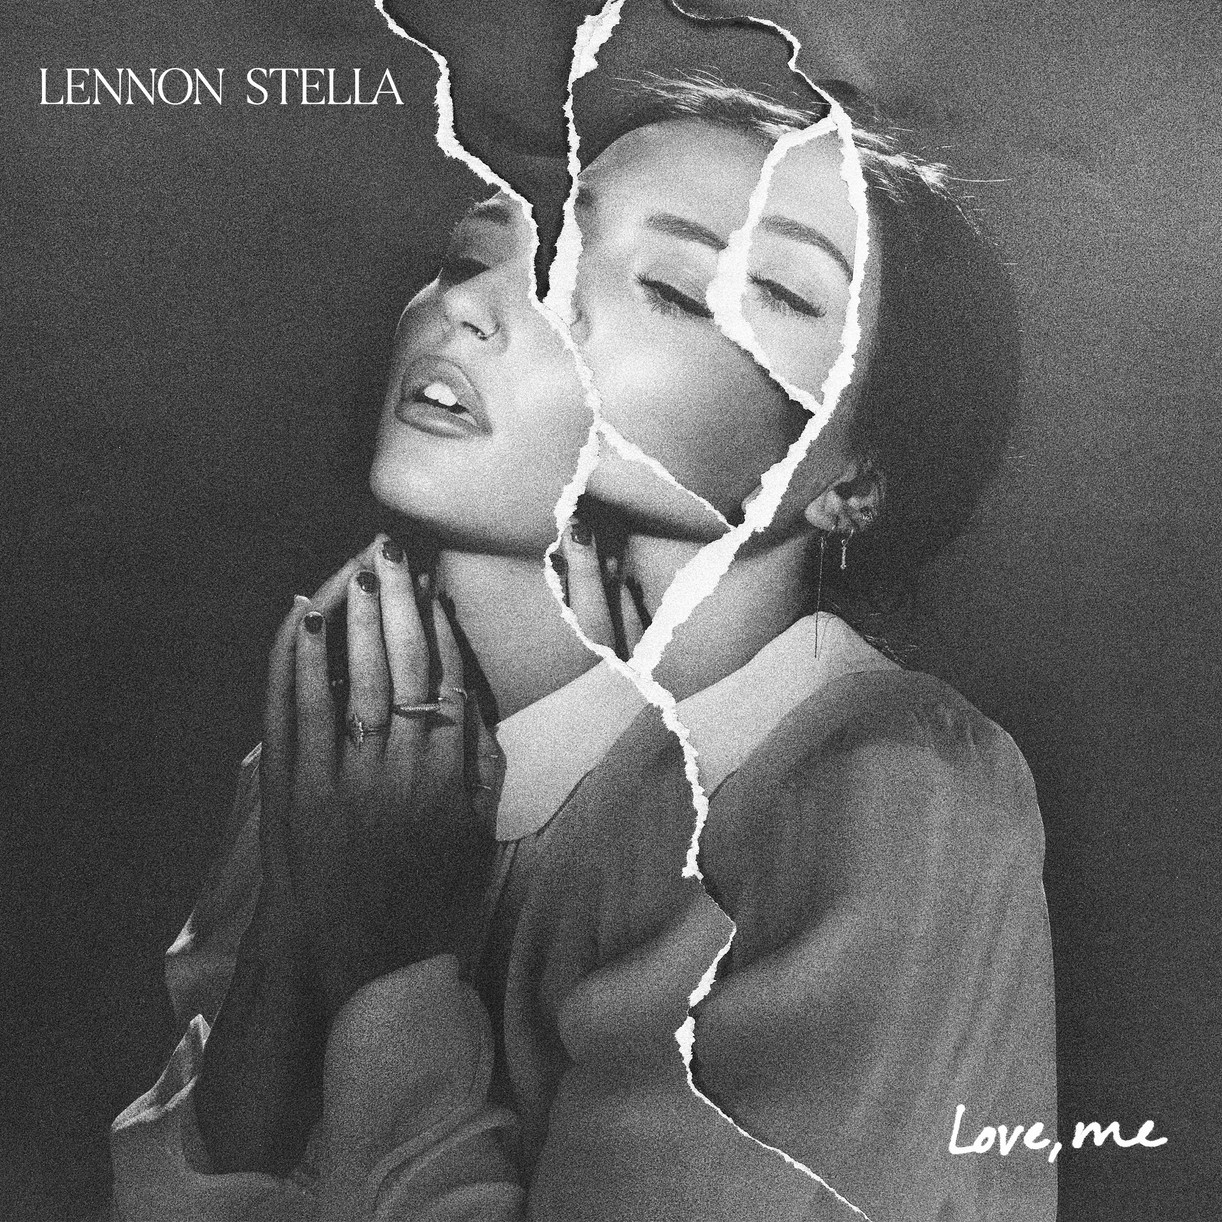 lennon stella love me ep 05